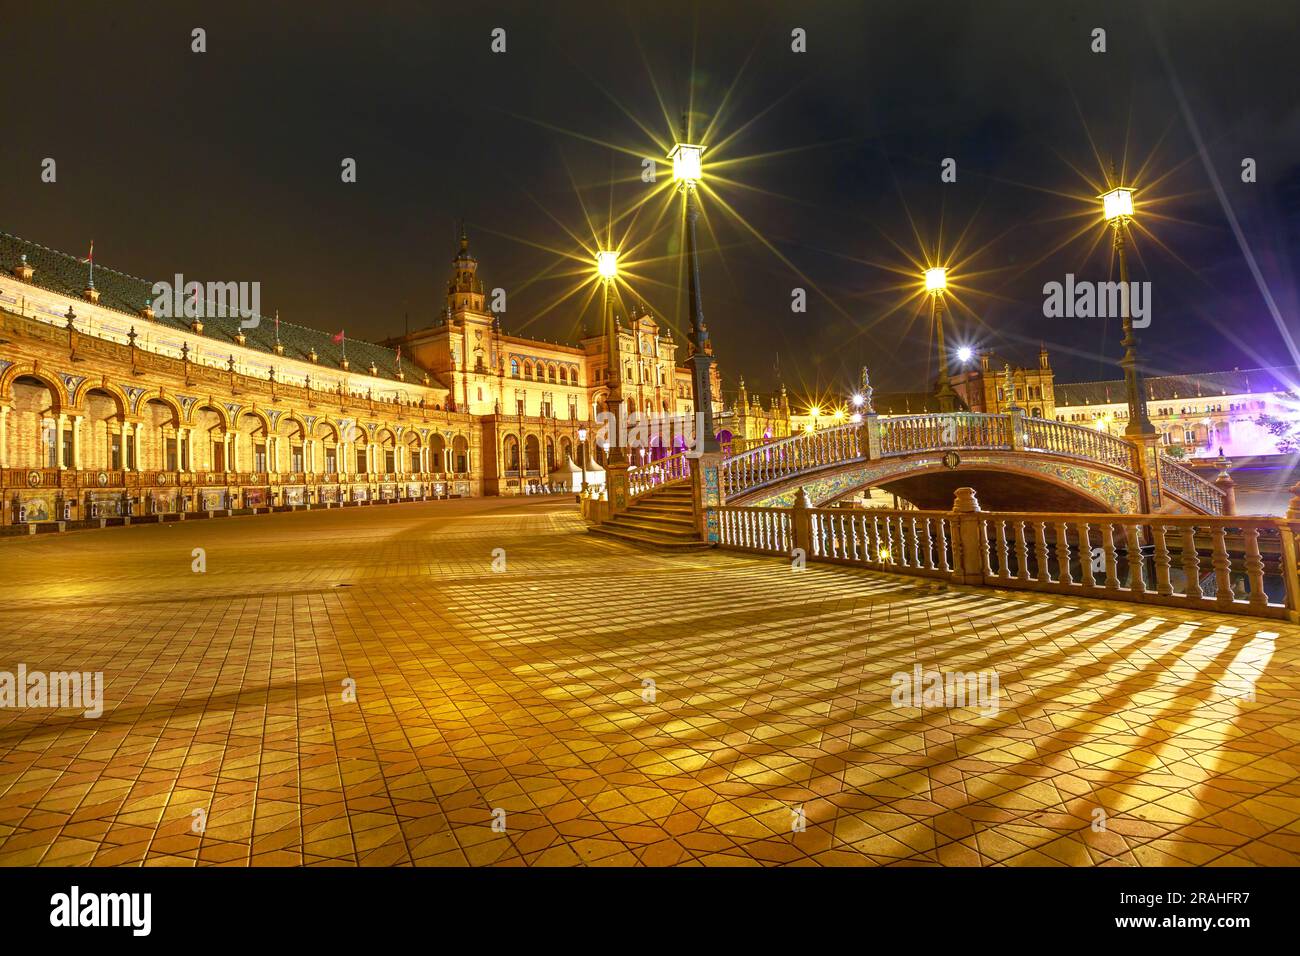 L'edificio rinascimentale centrale di Piazza Spagna, una vista mozzafiato dal Ponte di Leon a Siviglia di notte, il fascino di Plaza de Espana è al centro della scena Foto Stock